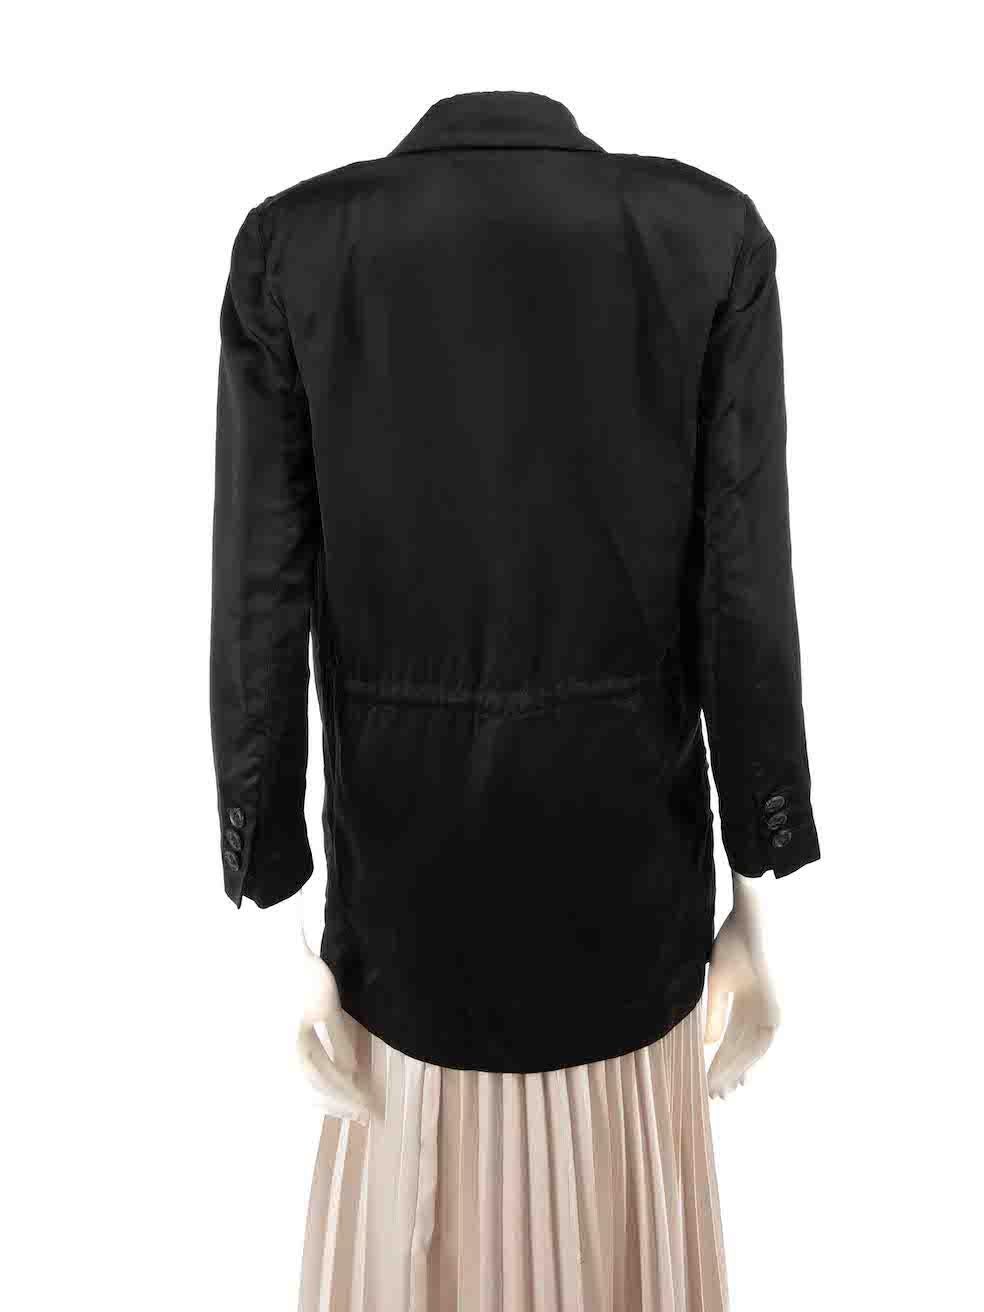 Diane Von Furstenberg Black Satin Blazer Size XS In Good Condition For Sale In London, GB